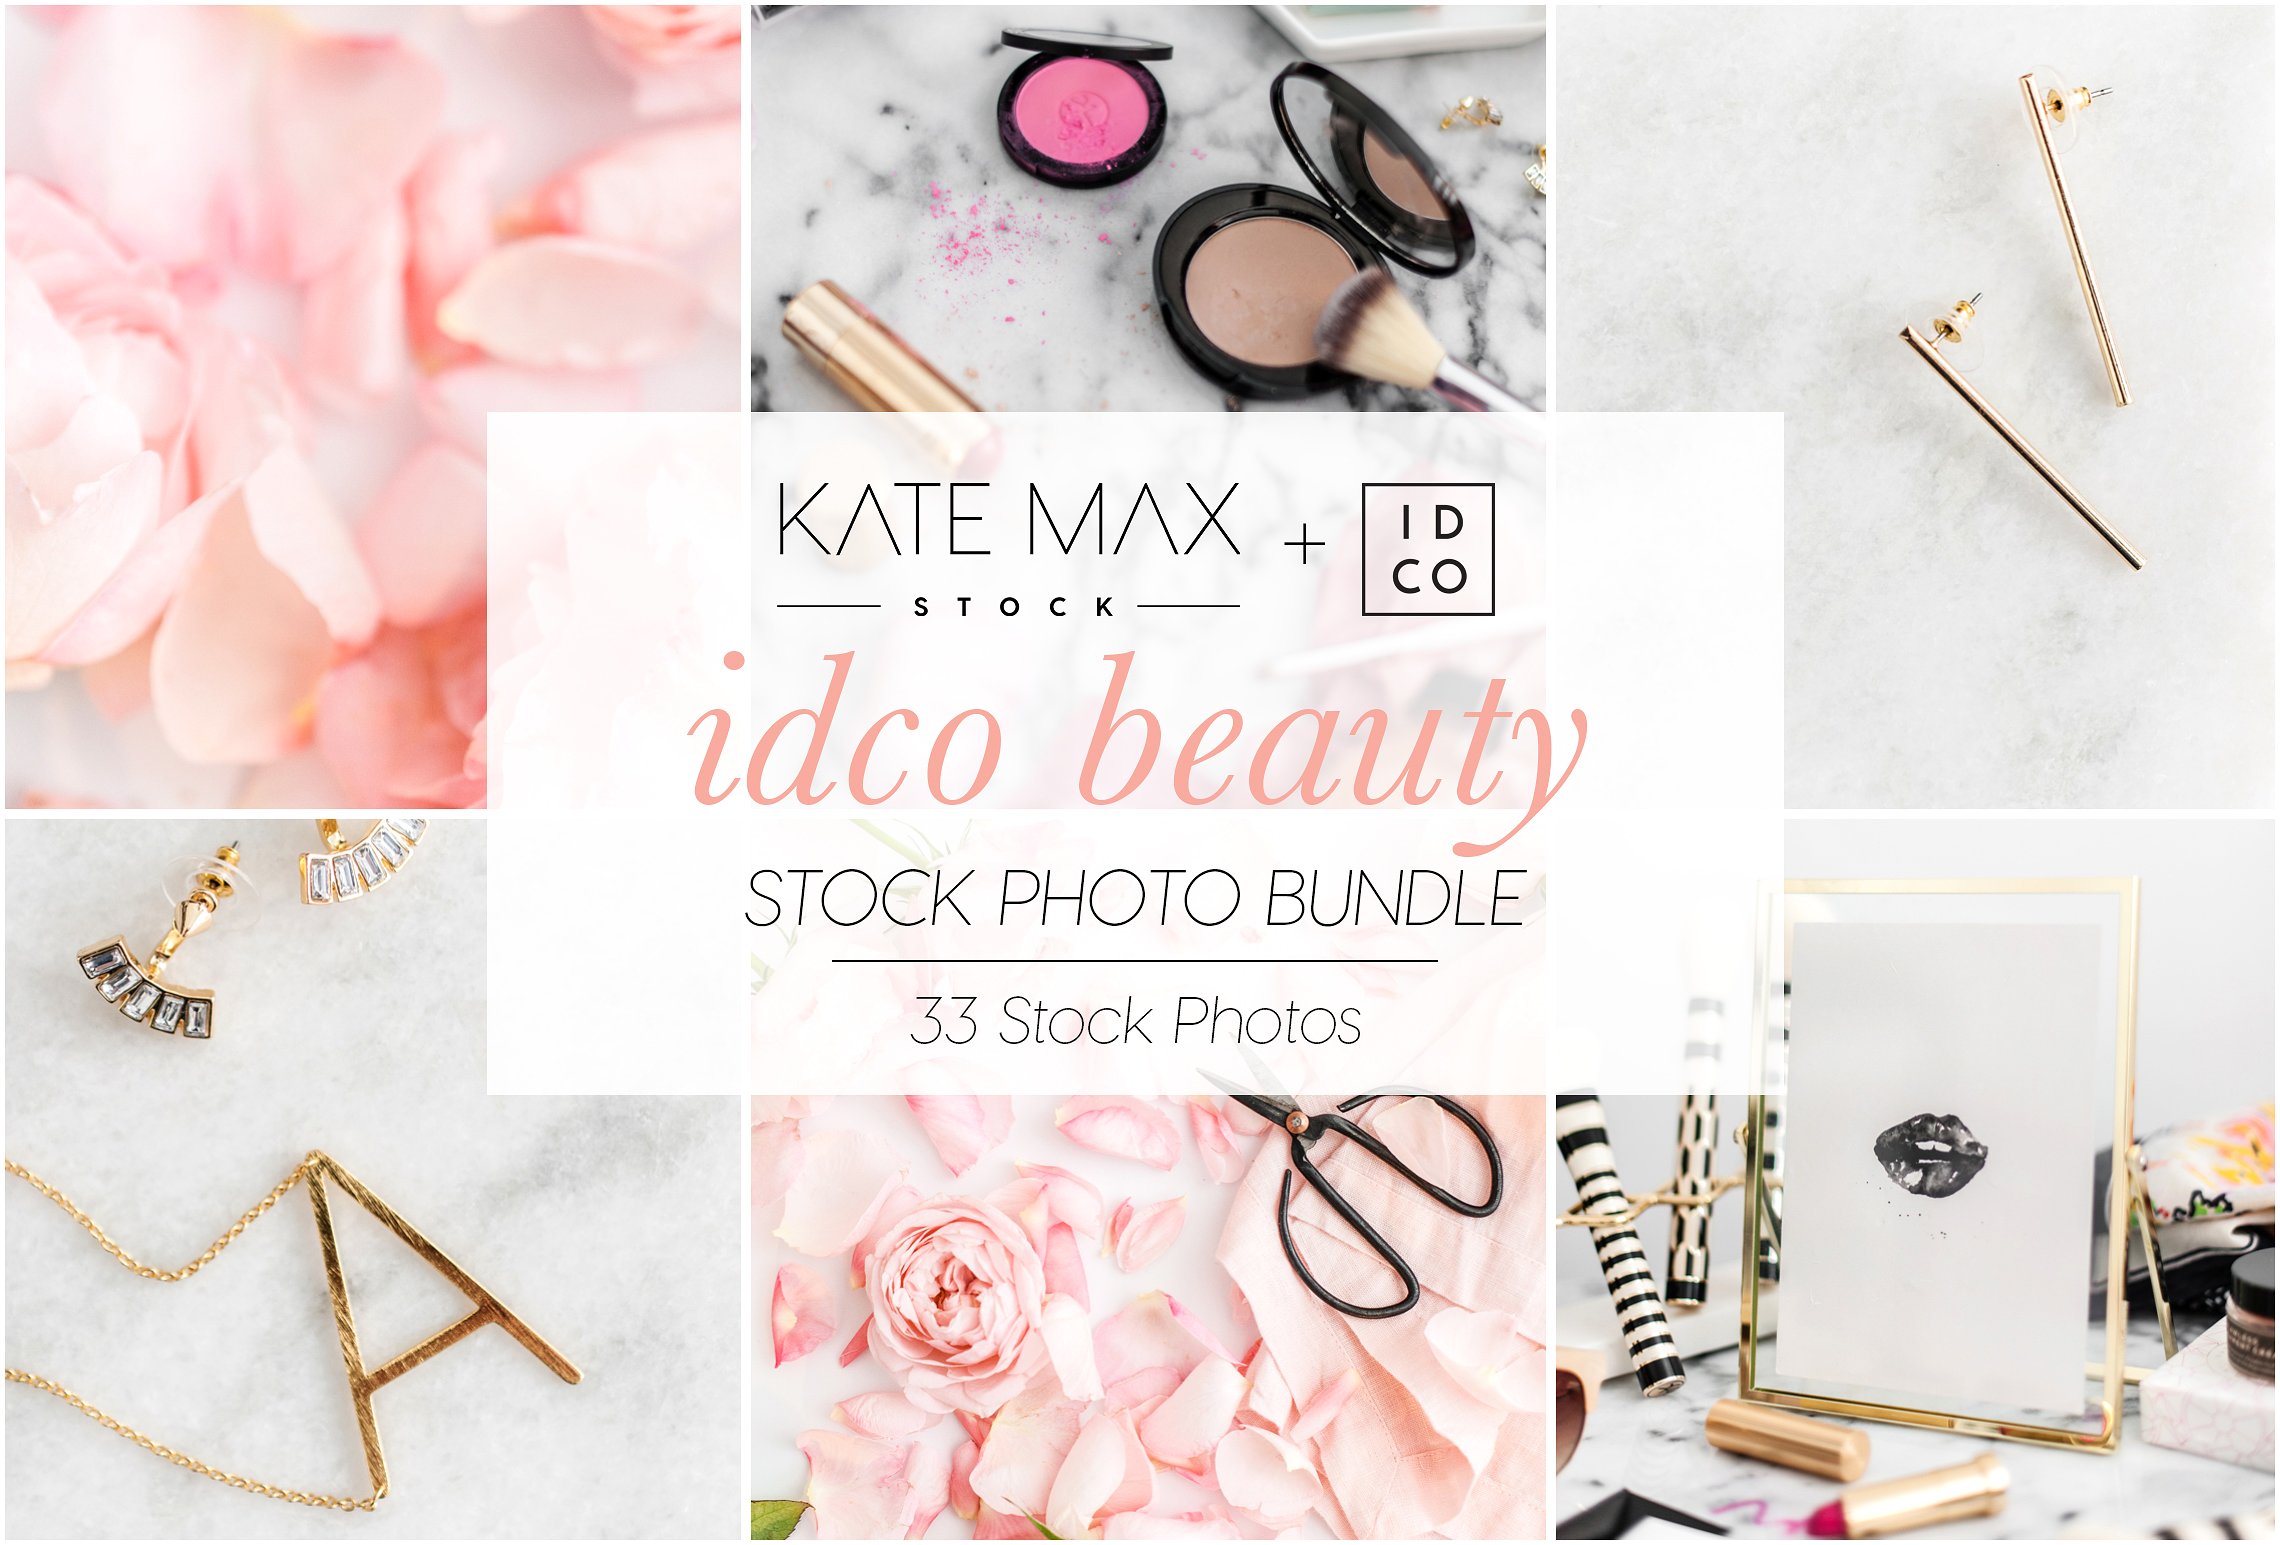 化妆间场景背景高清照片 IDCO Beauty Stock Photo Bundle插图